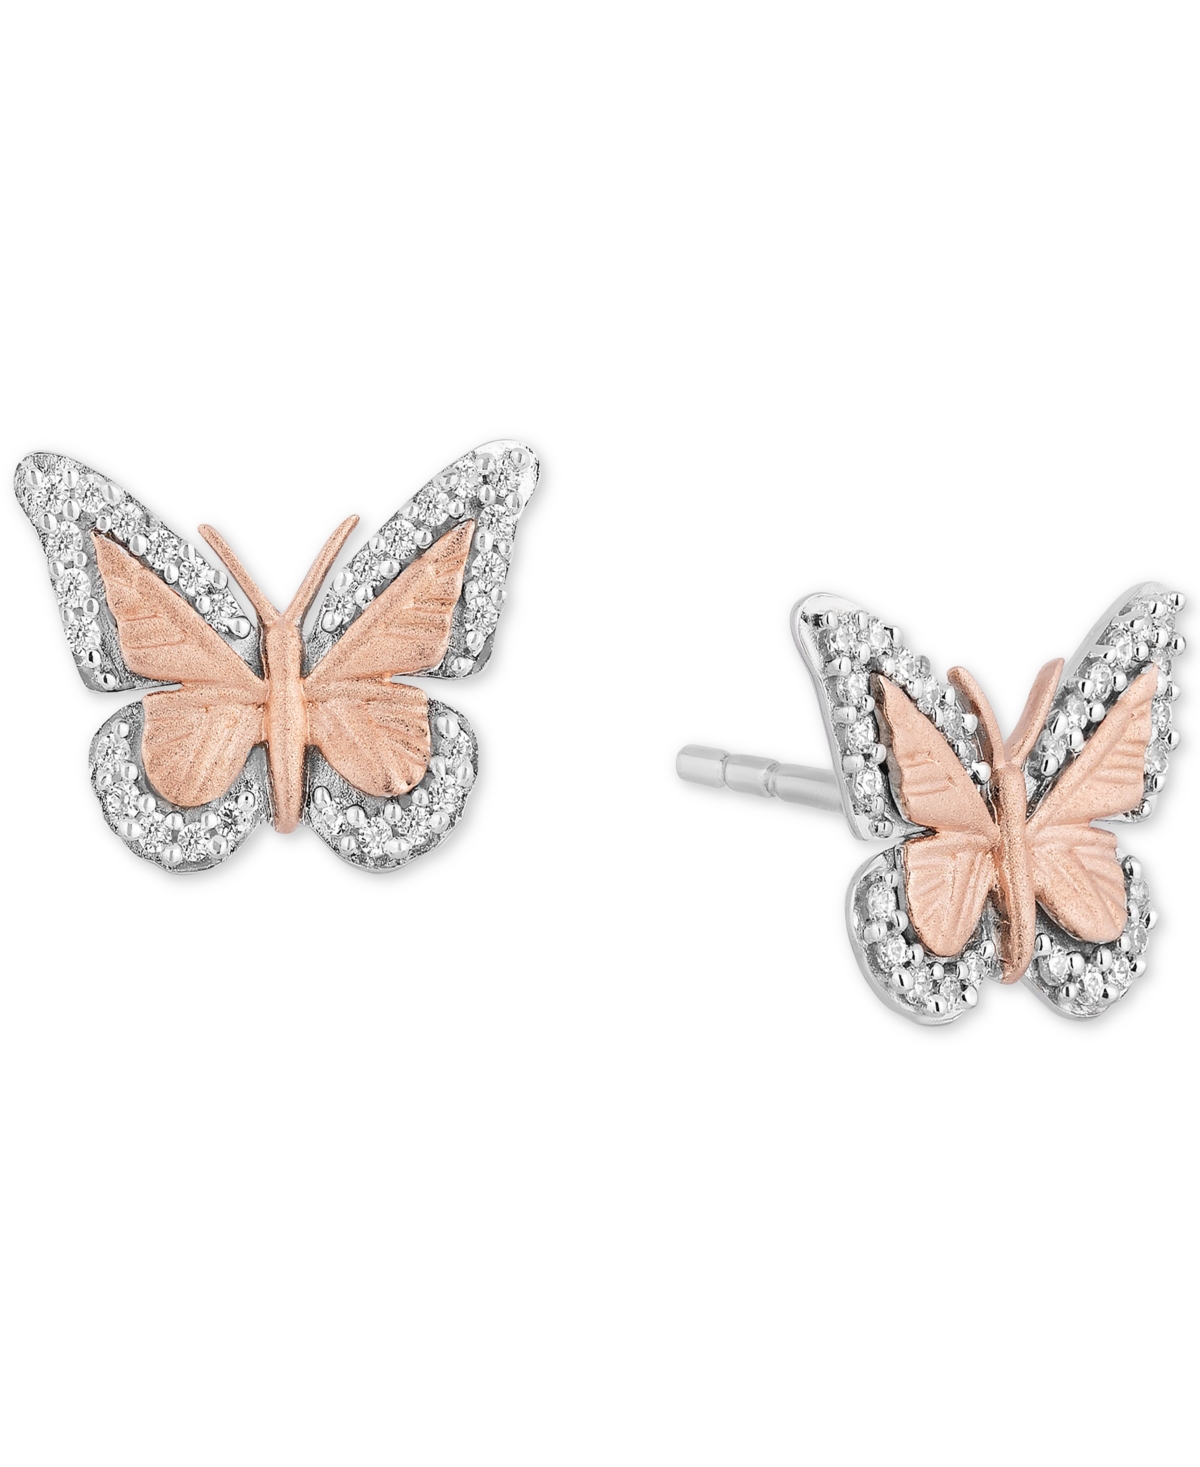 Diamond Butterfly Stud Earrings (1/7 ct. t.w.) in Sterling Silver & 14k Rose Gold - Rose Gold/ Sterling Silver